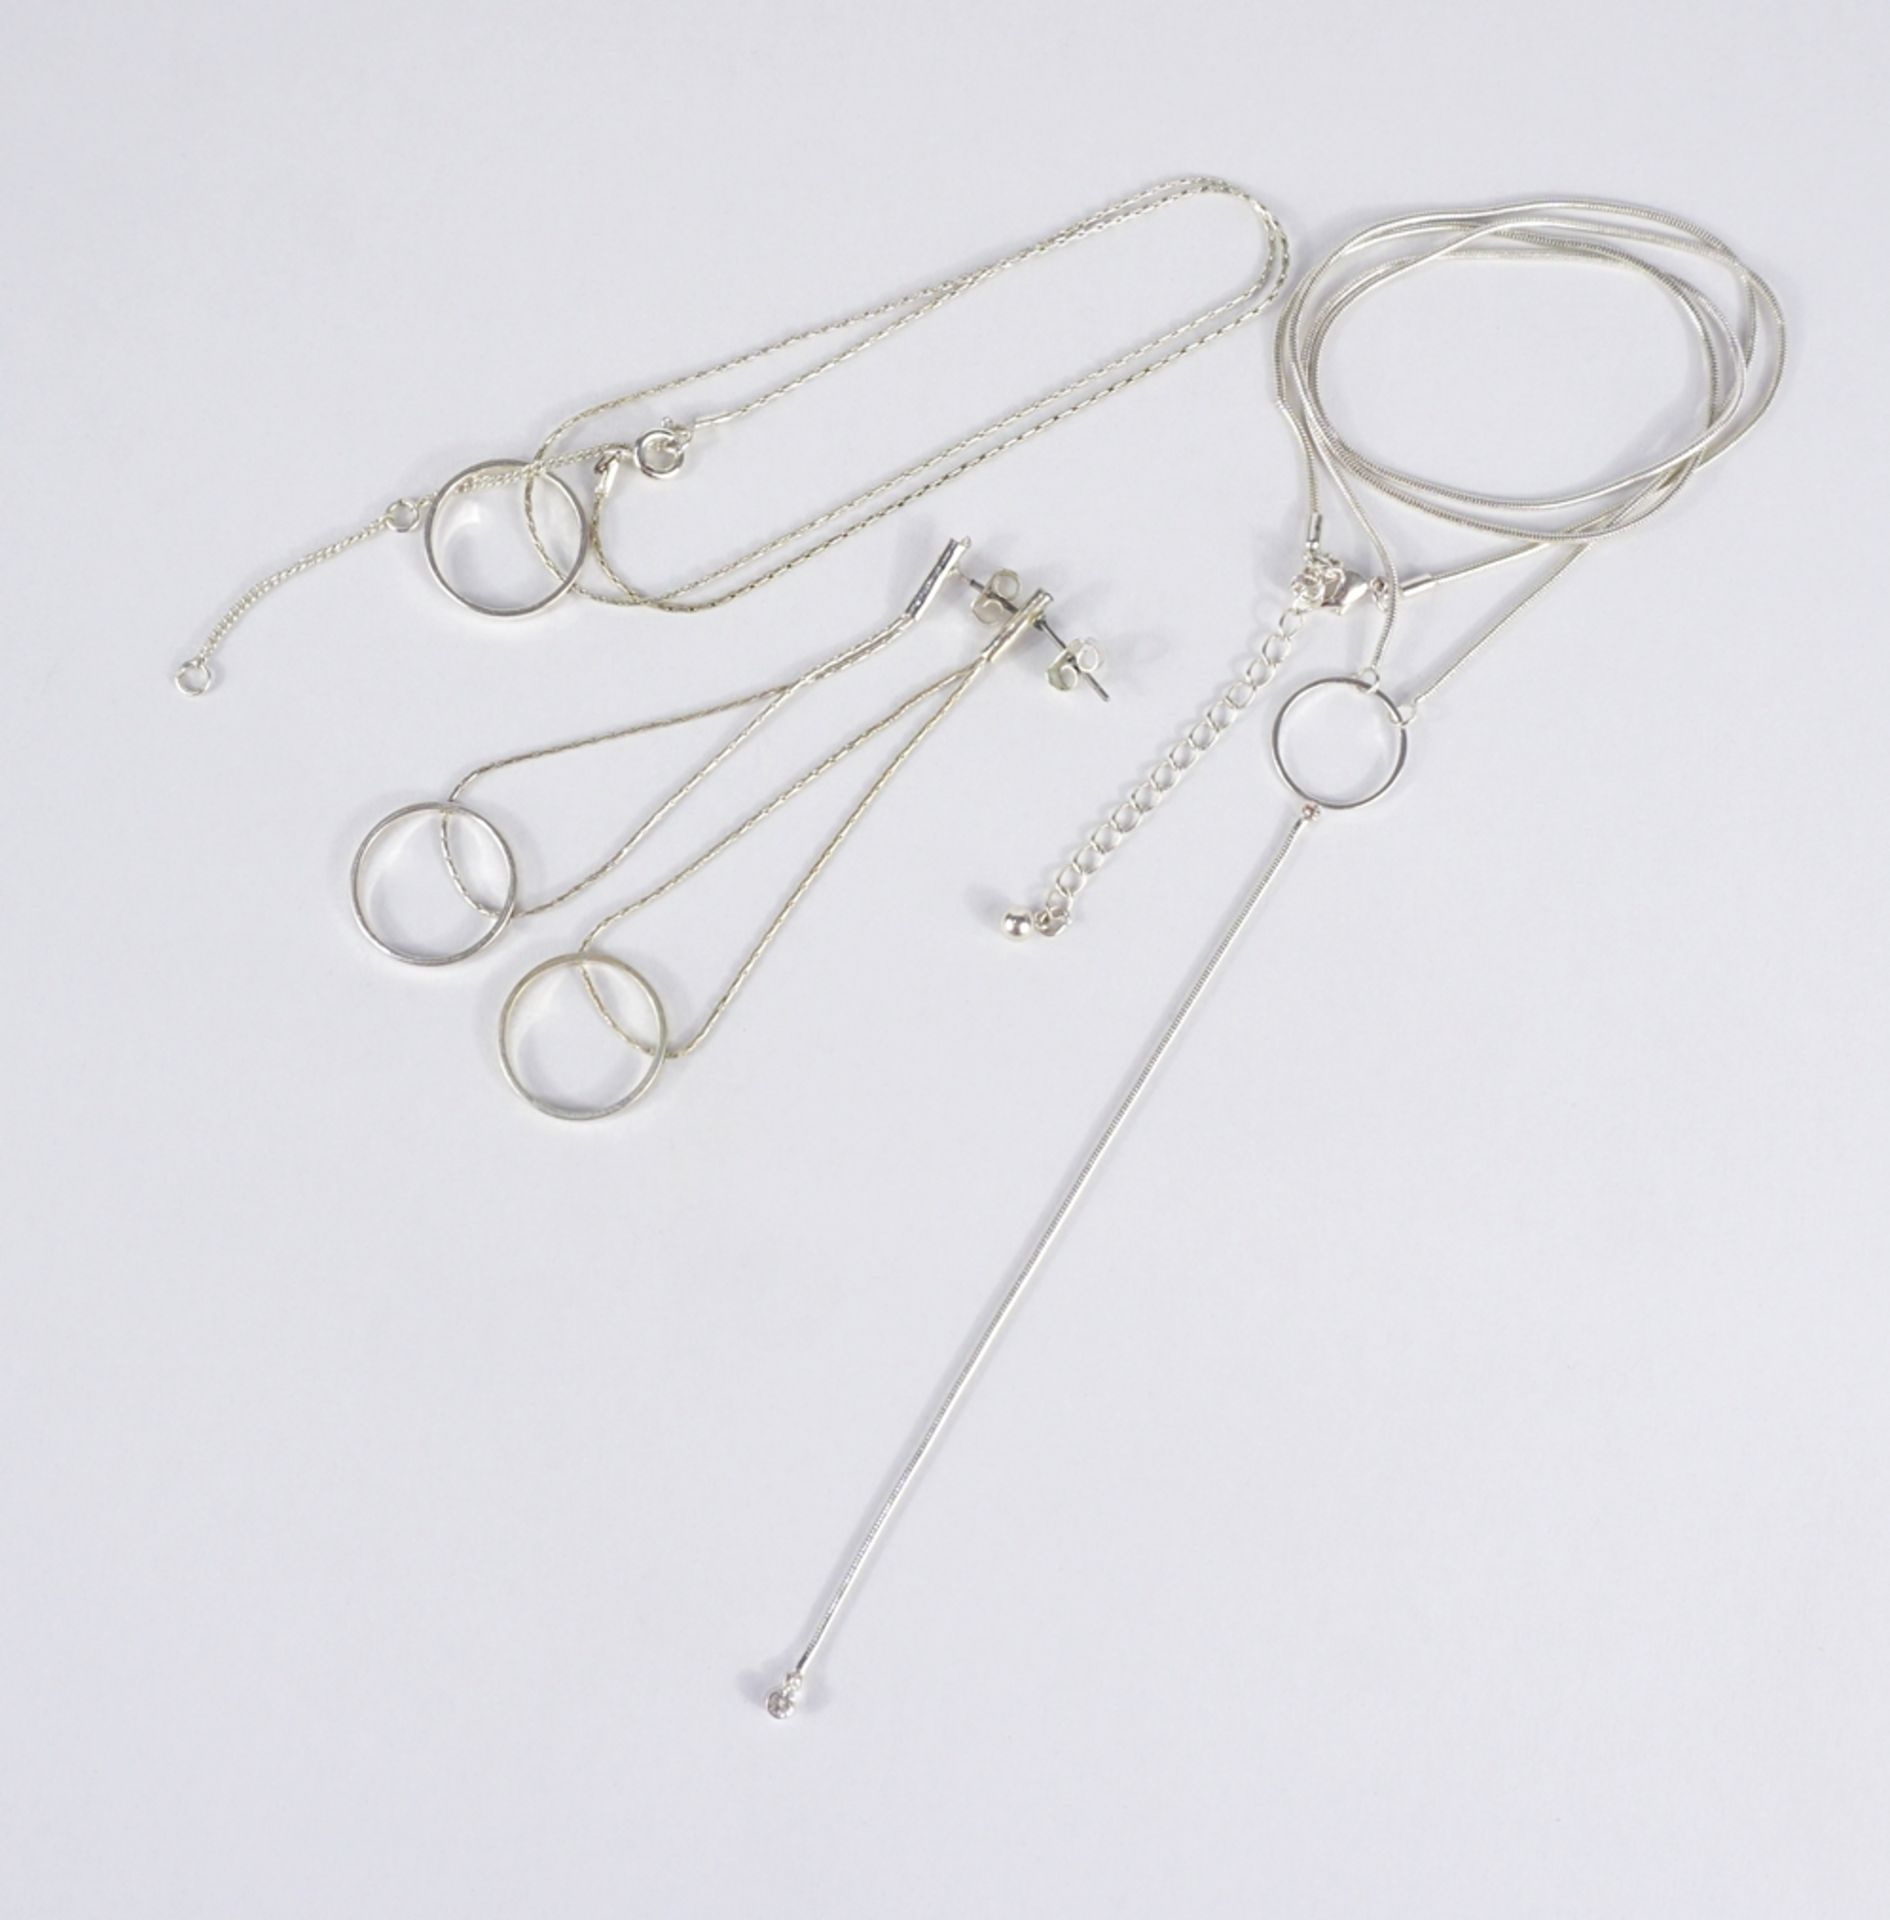 Kette mit Stabanhänger, 2 Colliers und 1 Paar Ohrringe, versilbert - Image 3 of 5